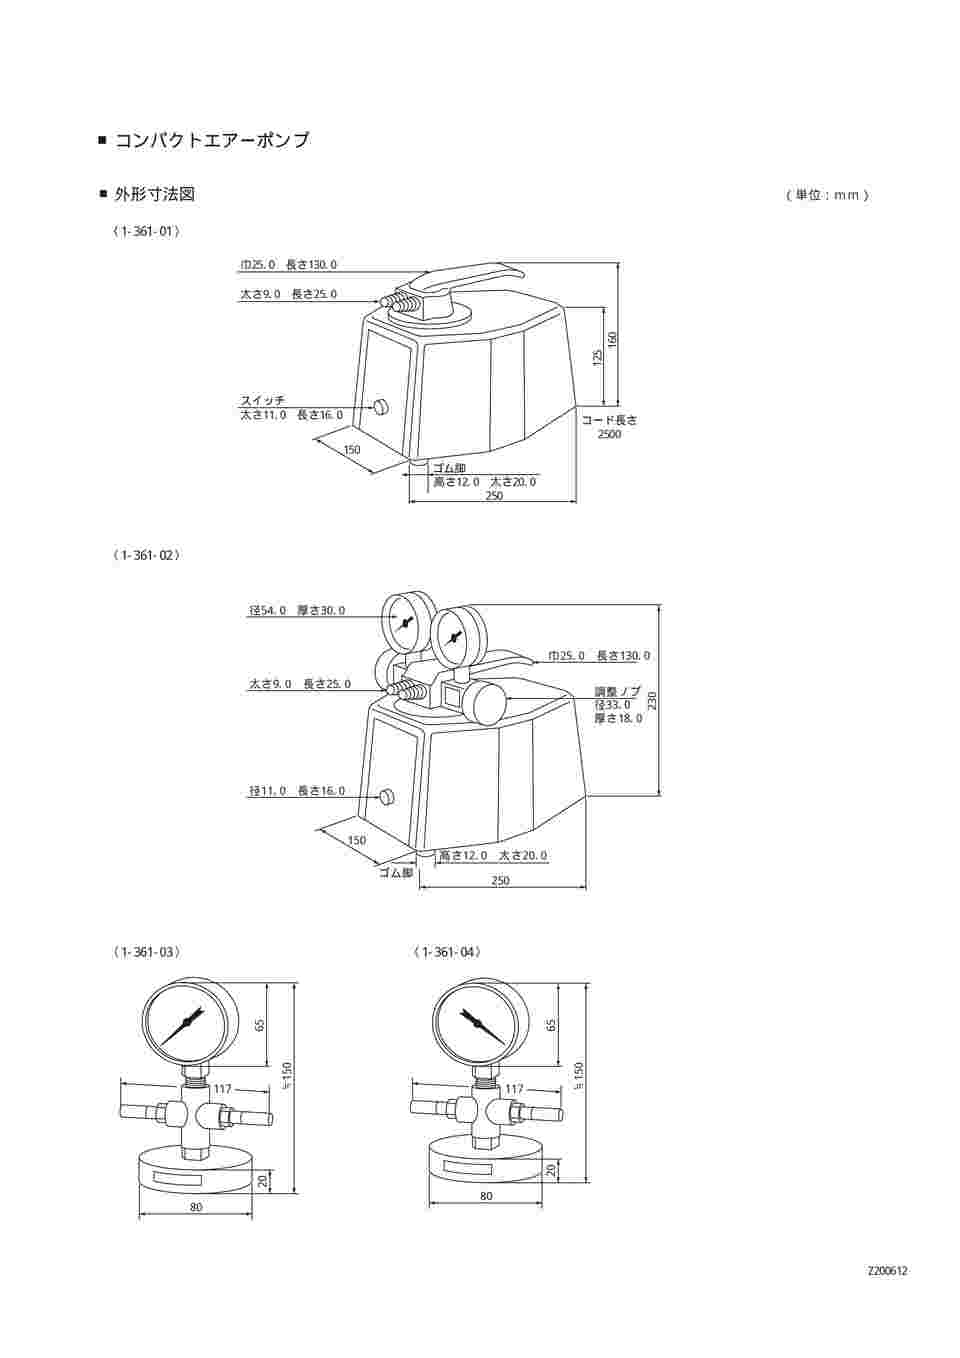 ポンプ アズワン コンパクトエアーポンプ 吸排両用型 NUP-1 (1-361-01 